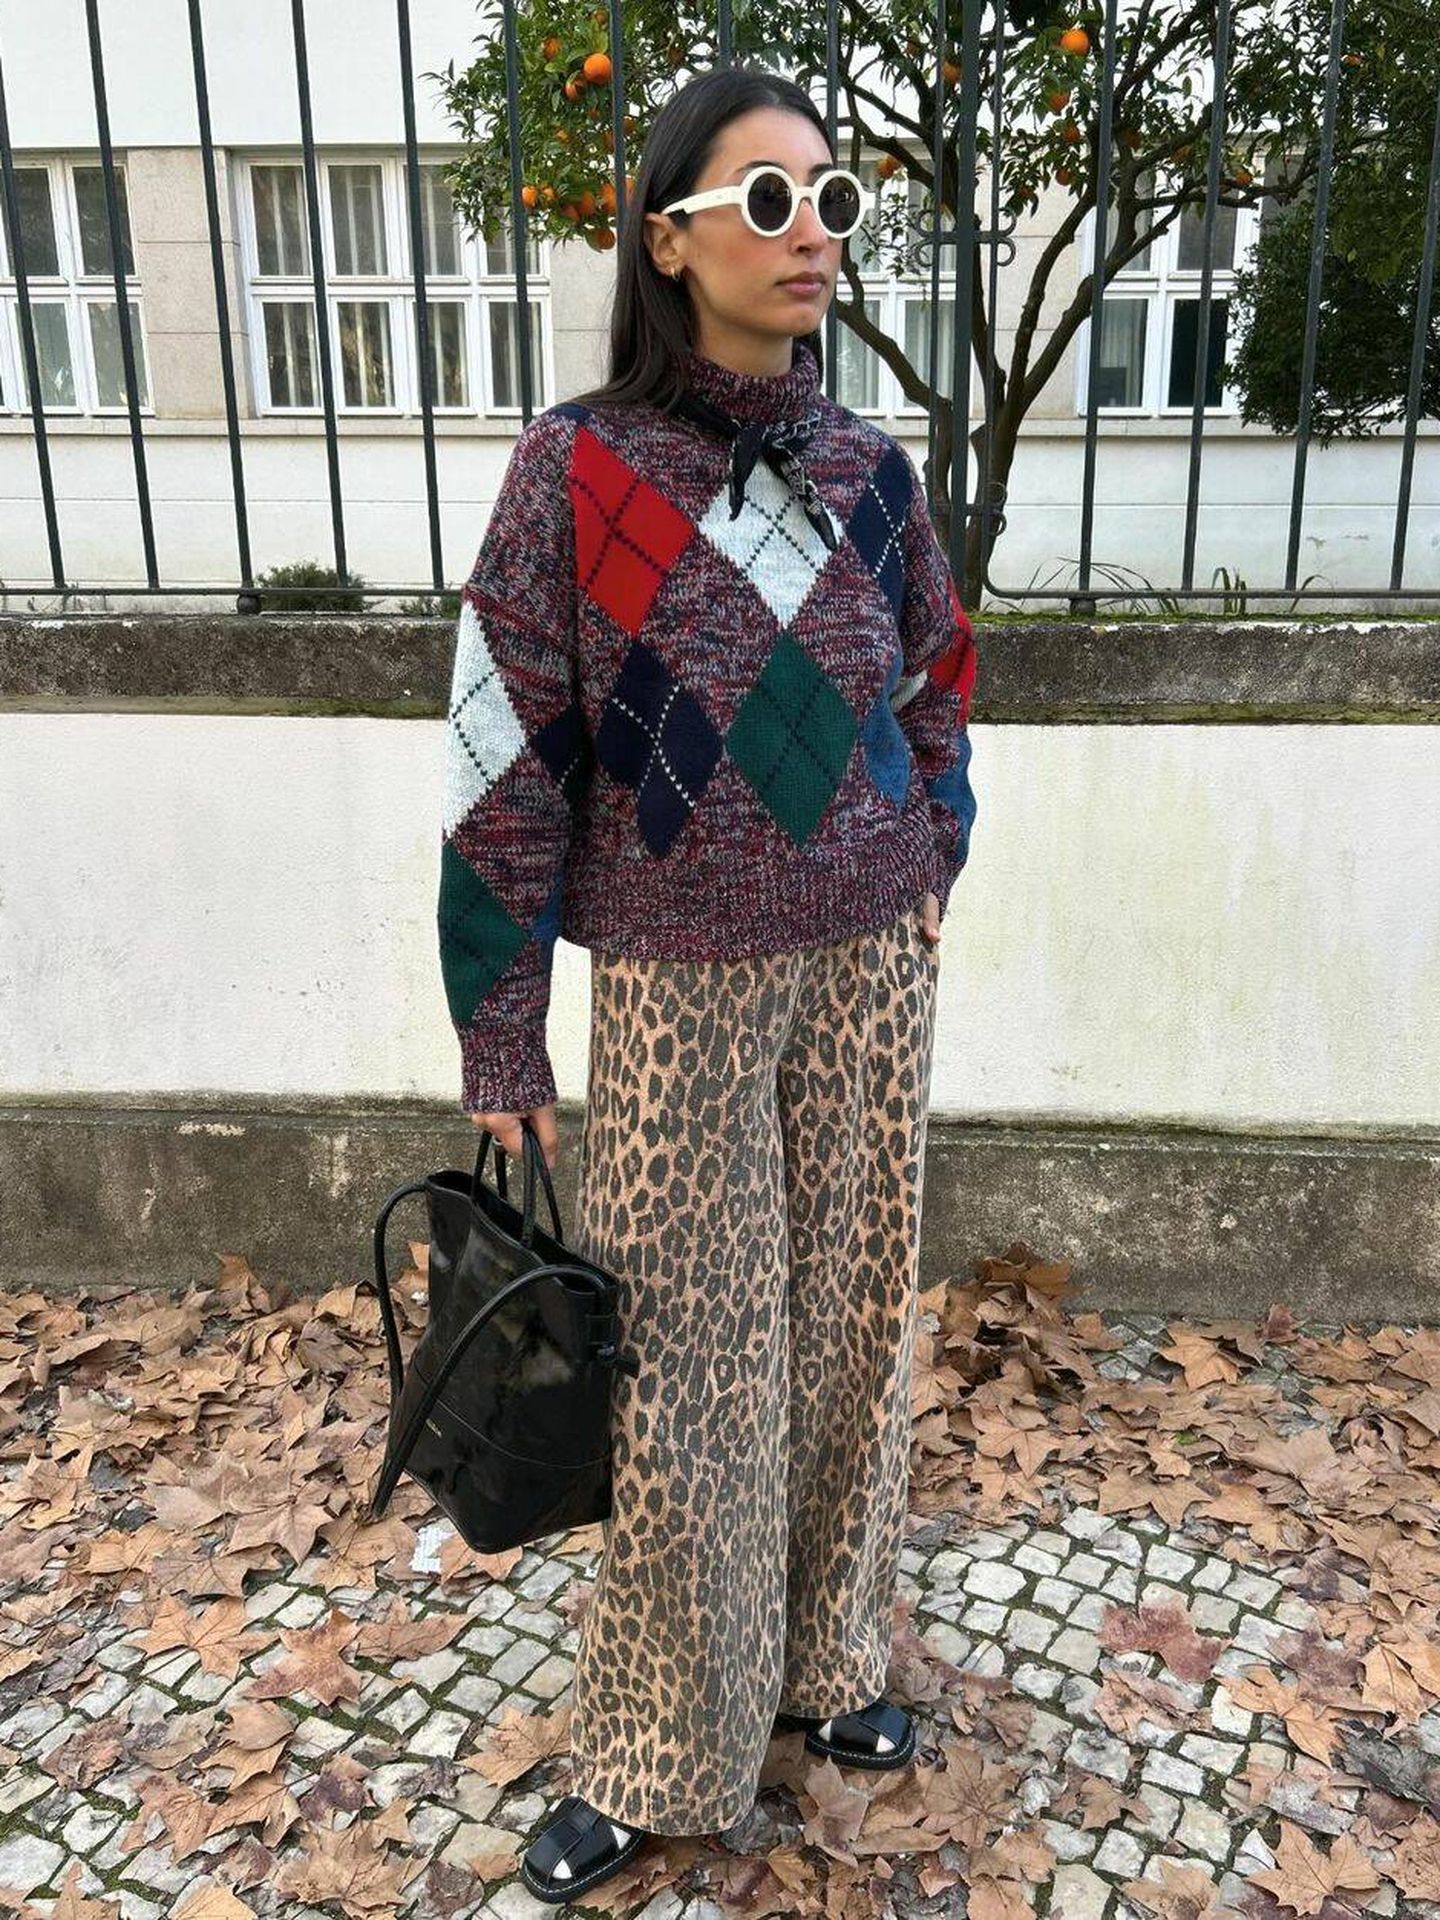 Pantalón de estampado de leopardo y jersey de rombos, ¿por qué no? (Instagram/@barbarasantiago.r)